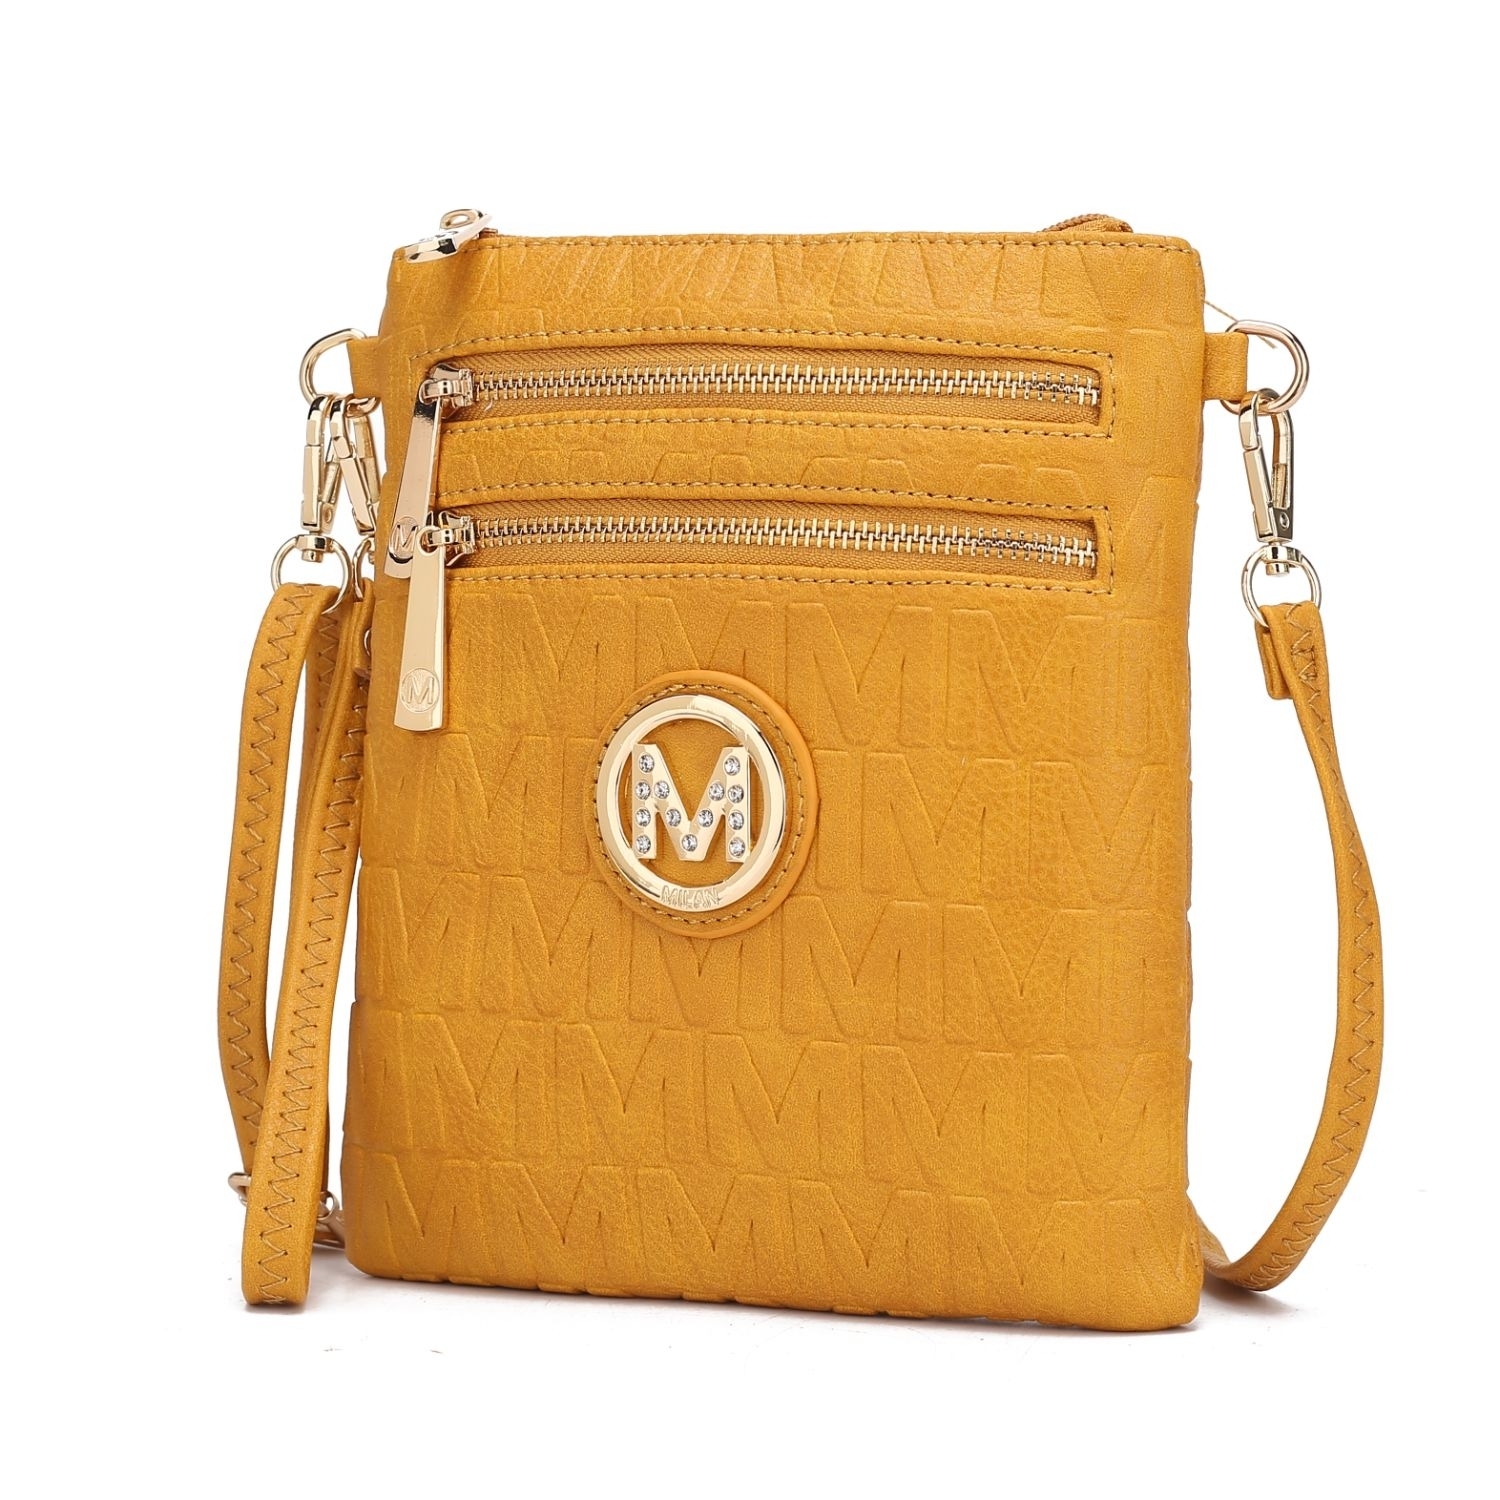 MKF Collection Scarlett Crossbody Handbag By Mia K. - Mustard